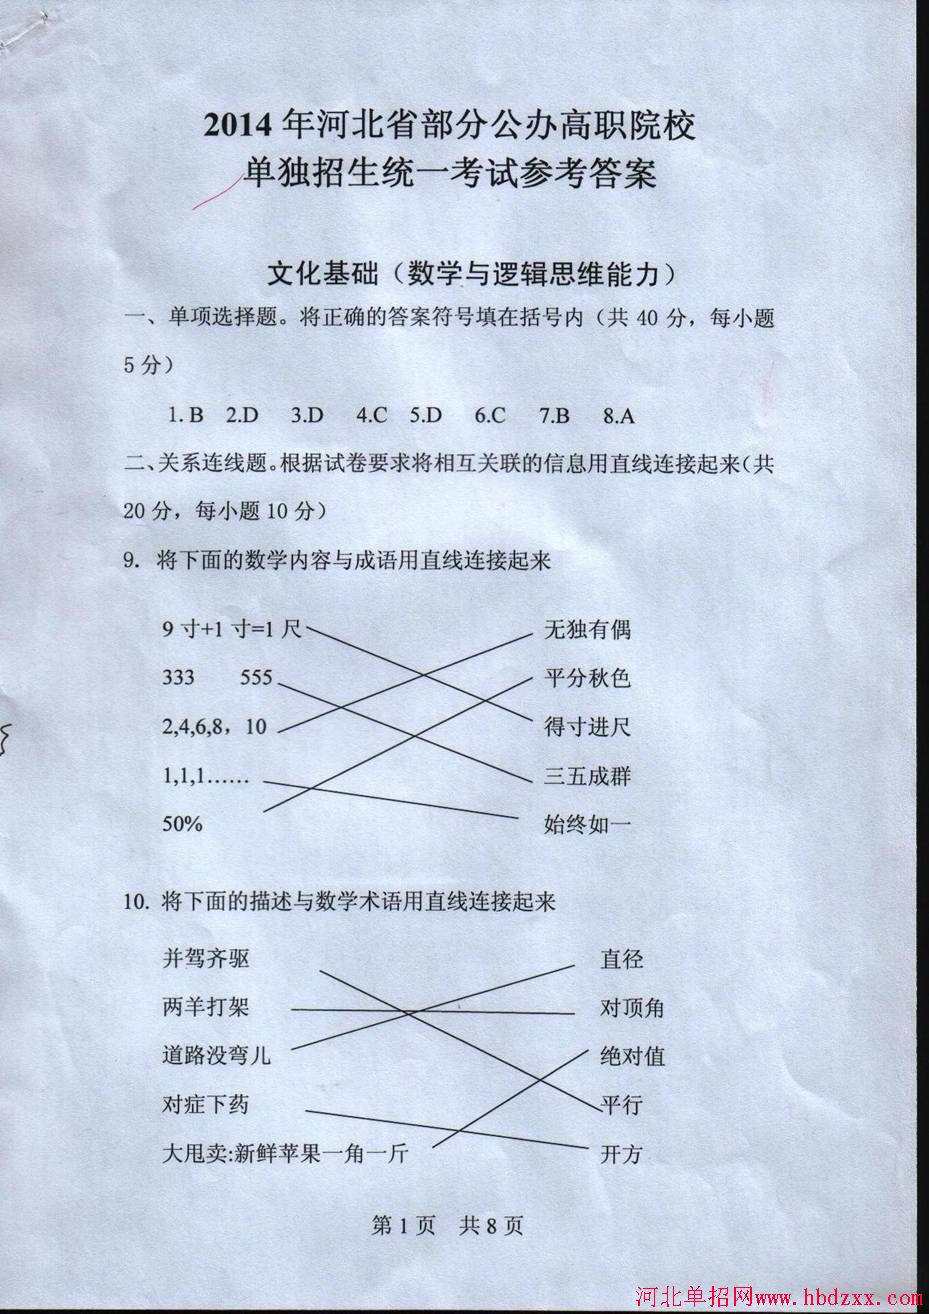 2014年河北省部分公办高职院校单独招生统一考试试卷及答案 图1